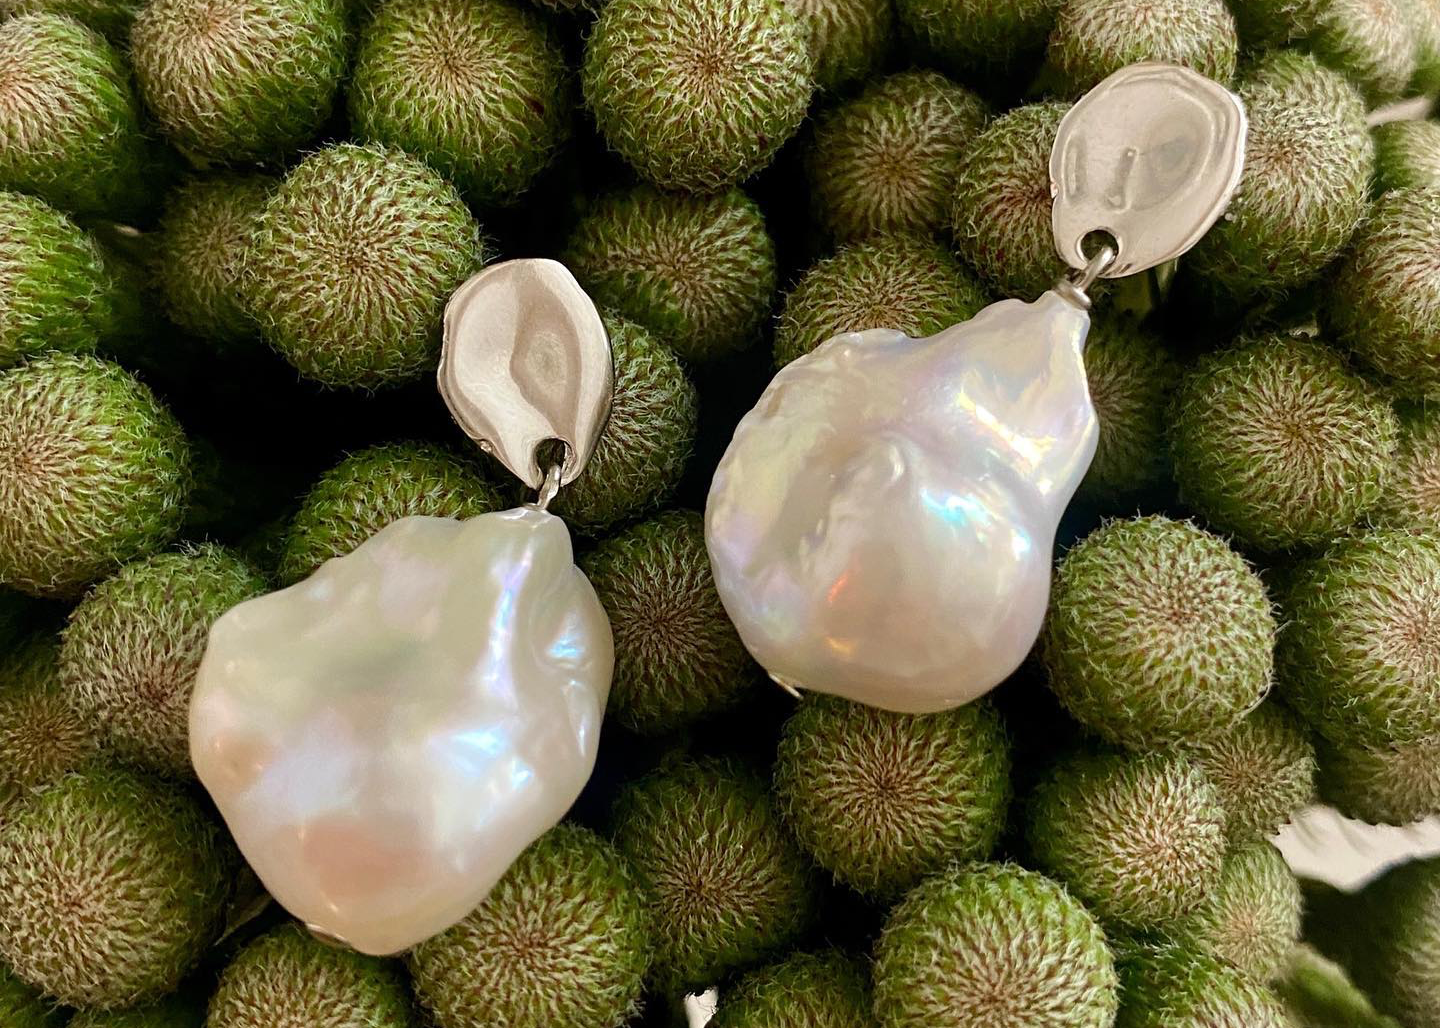 Biko earrings arranged on an organic fruit surface